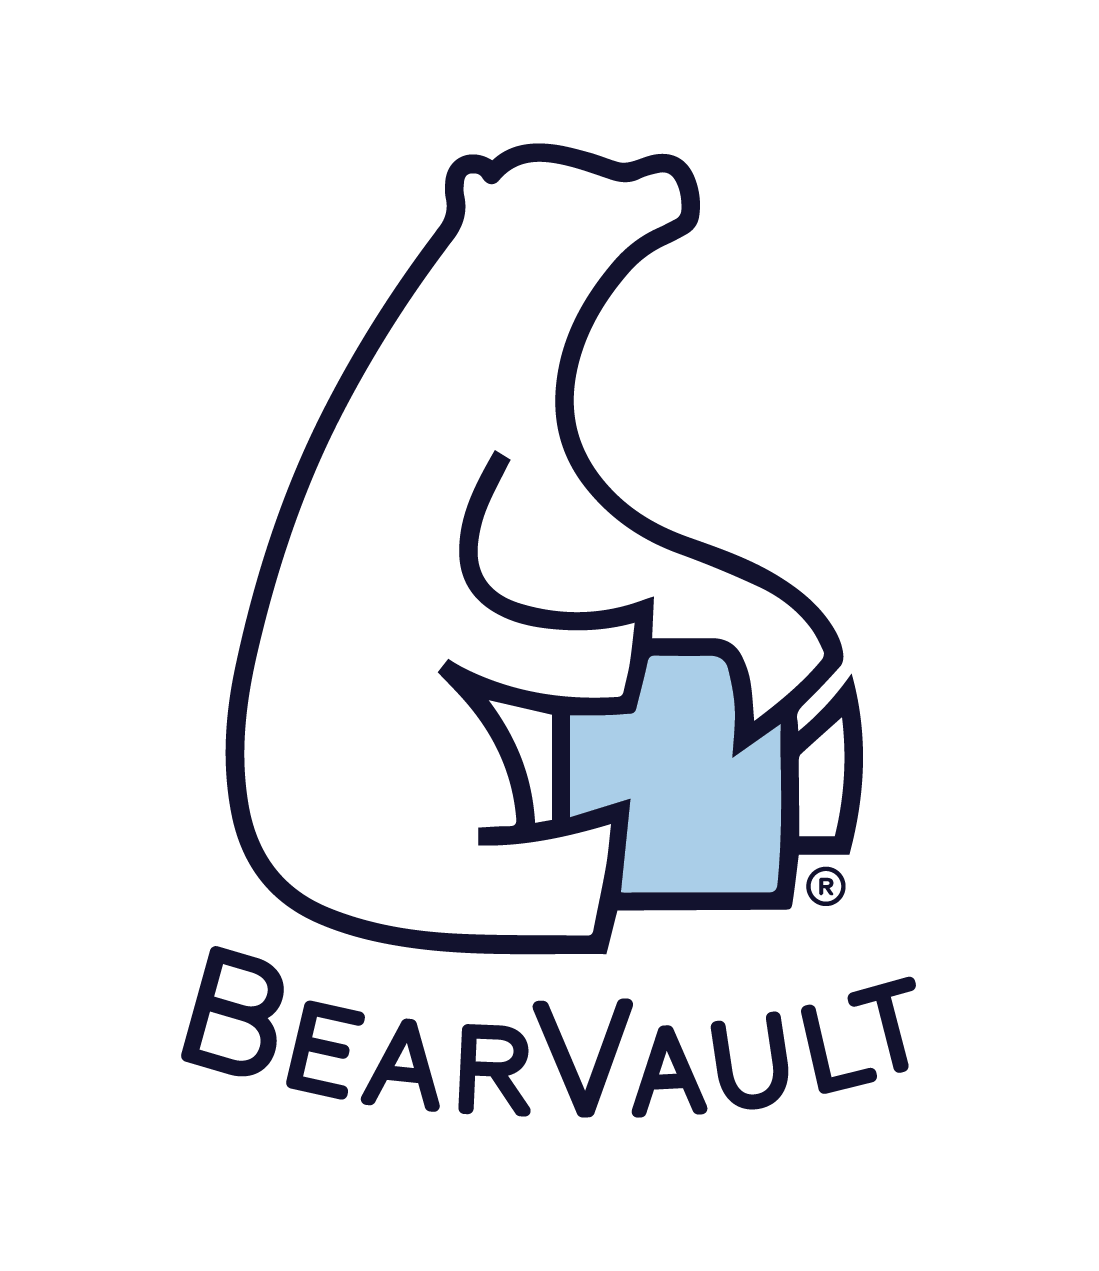 BearVault